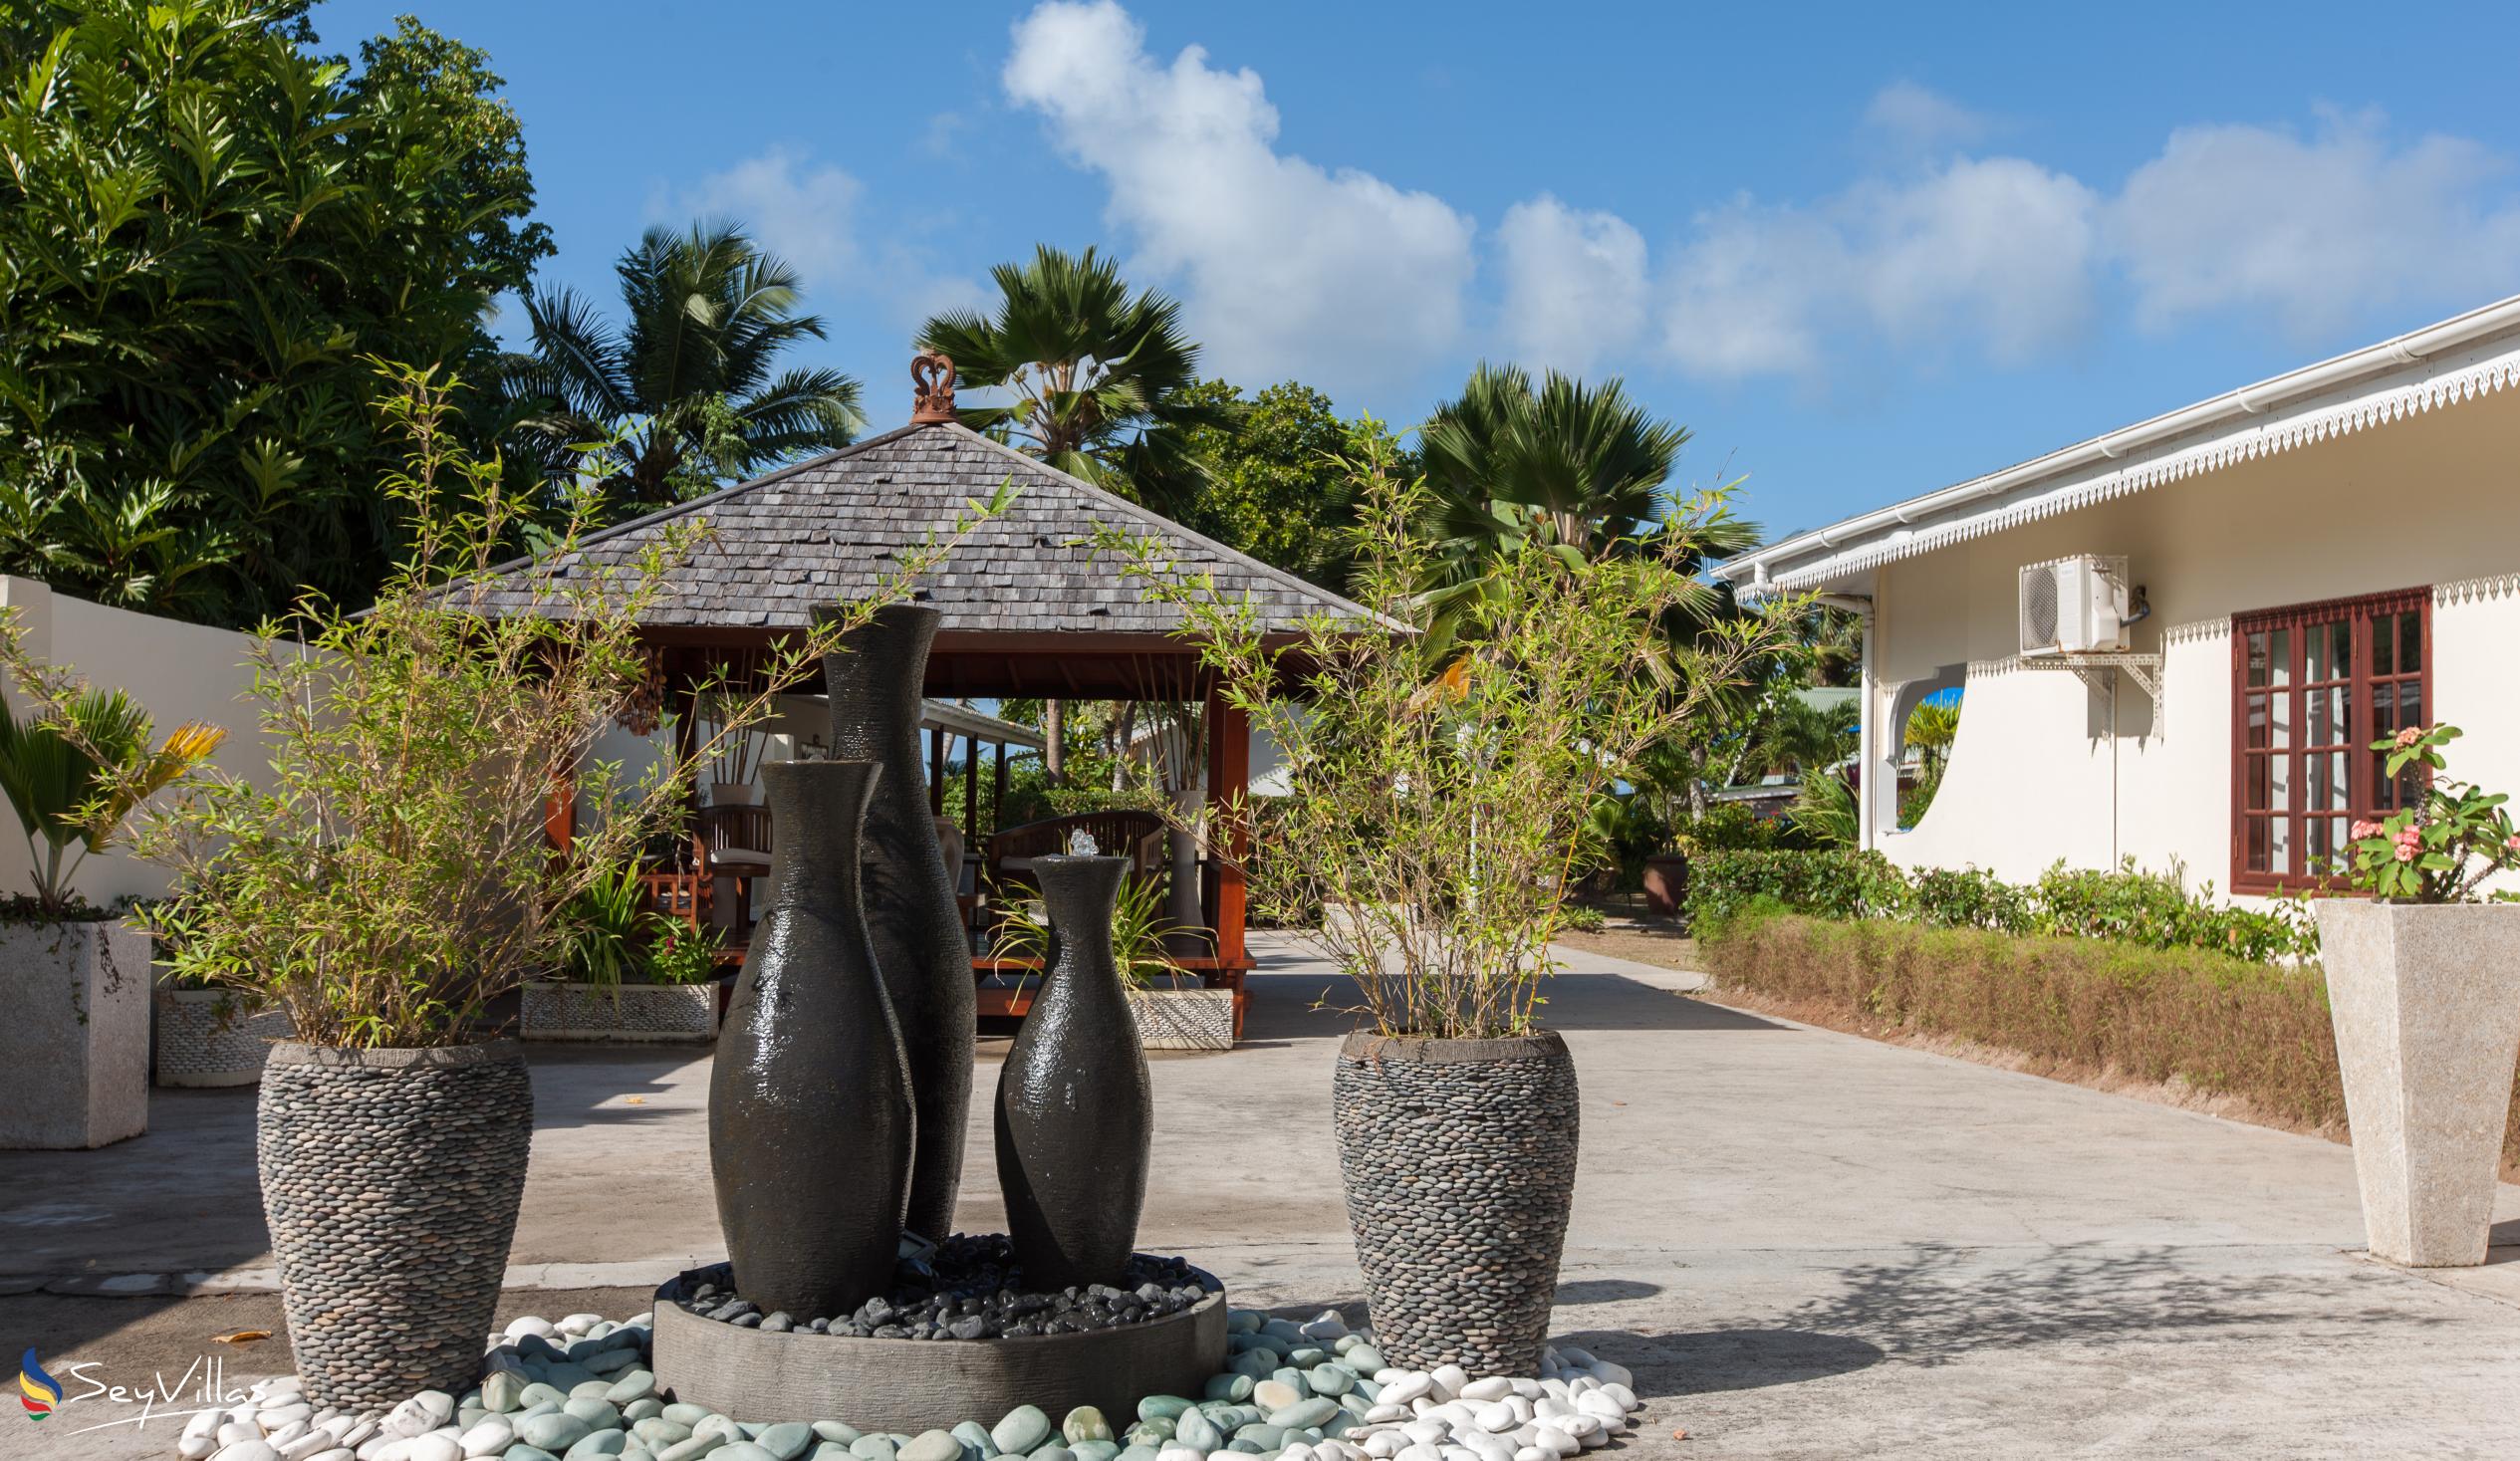 Photo 13: Villas de Mer - Outdoor area - Praslin (Seychelles)